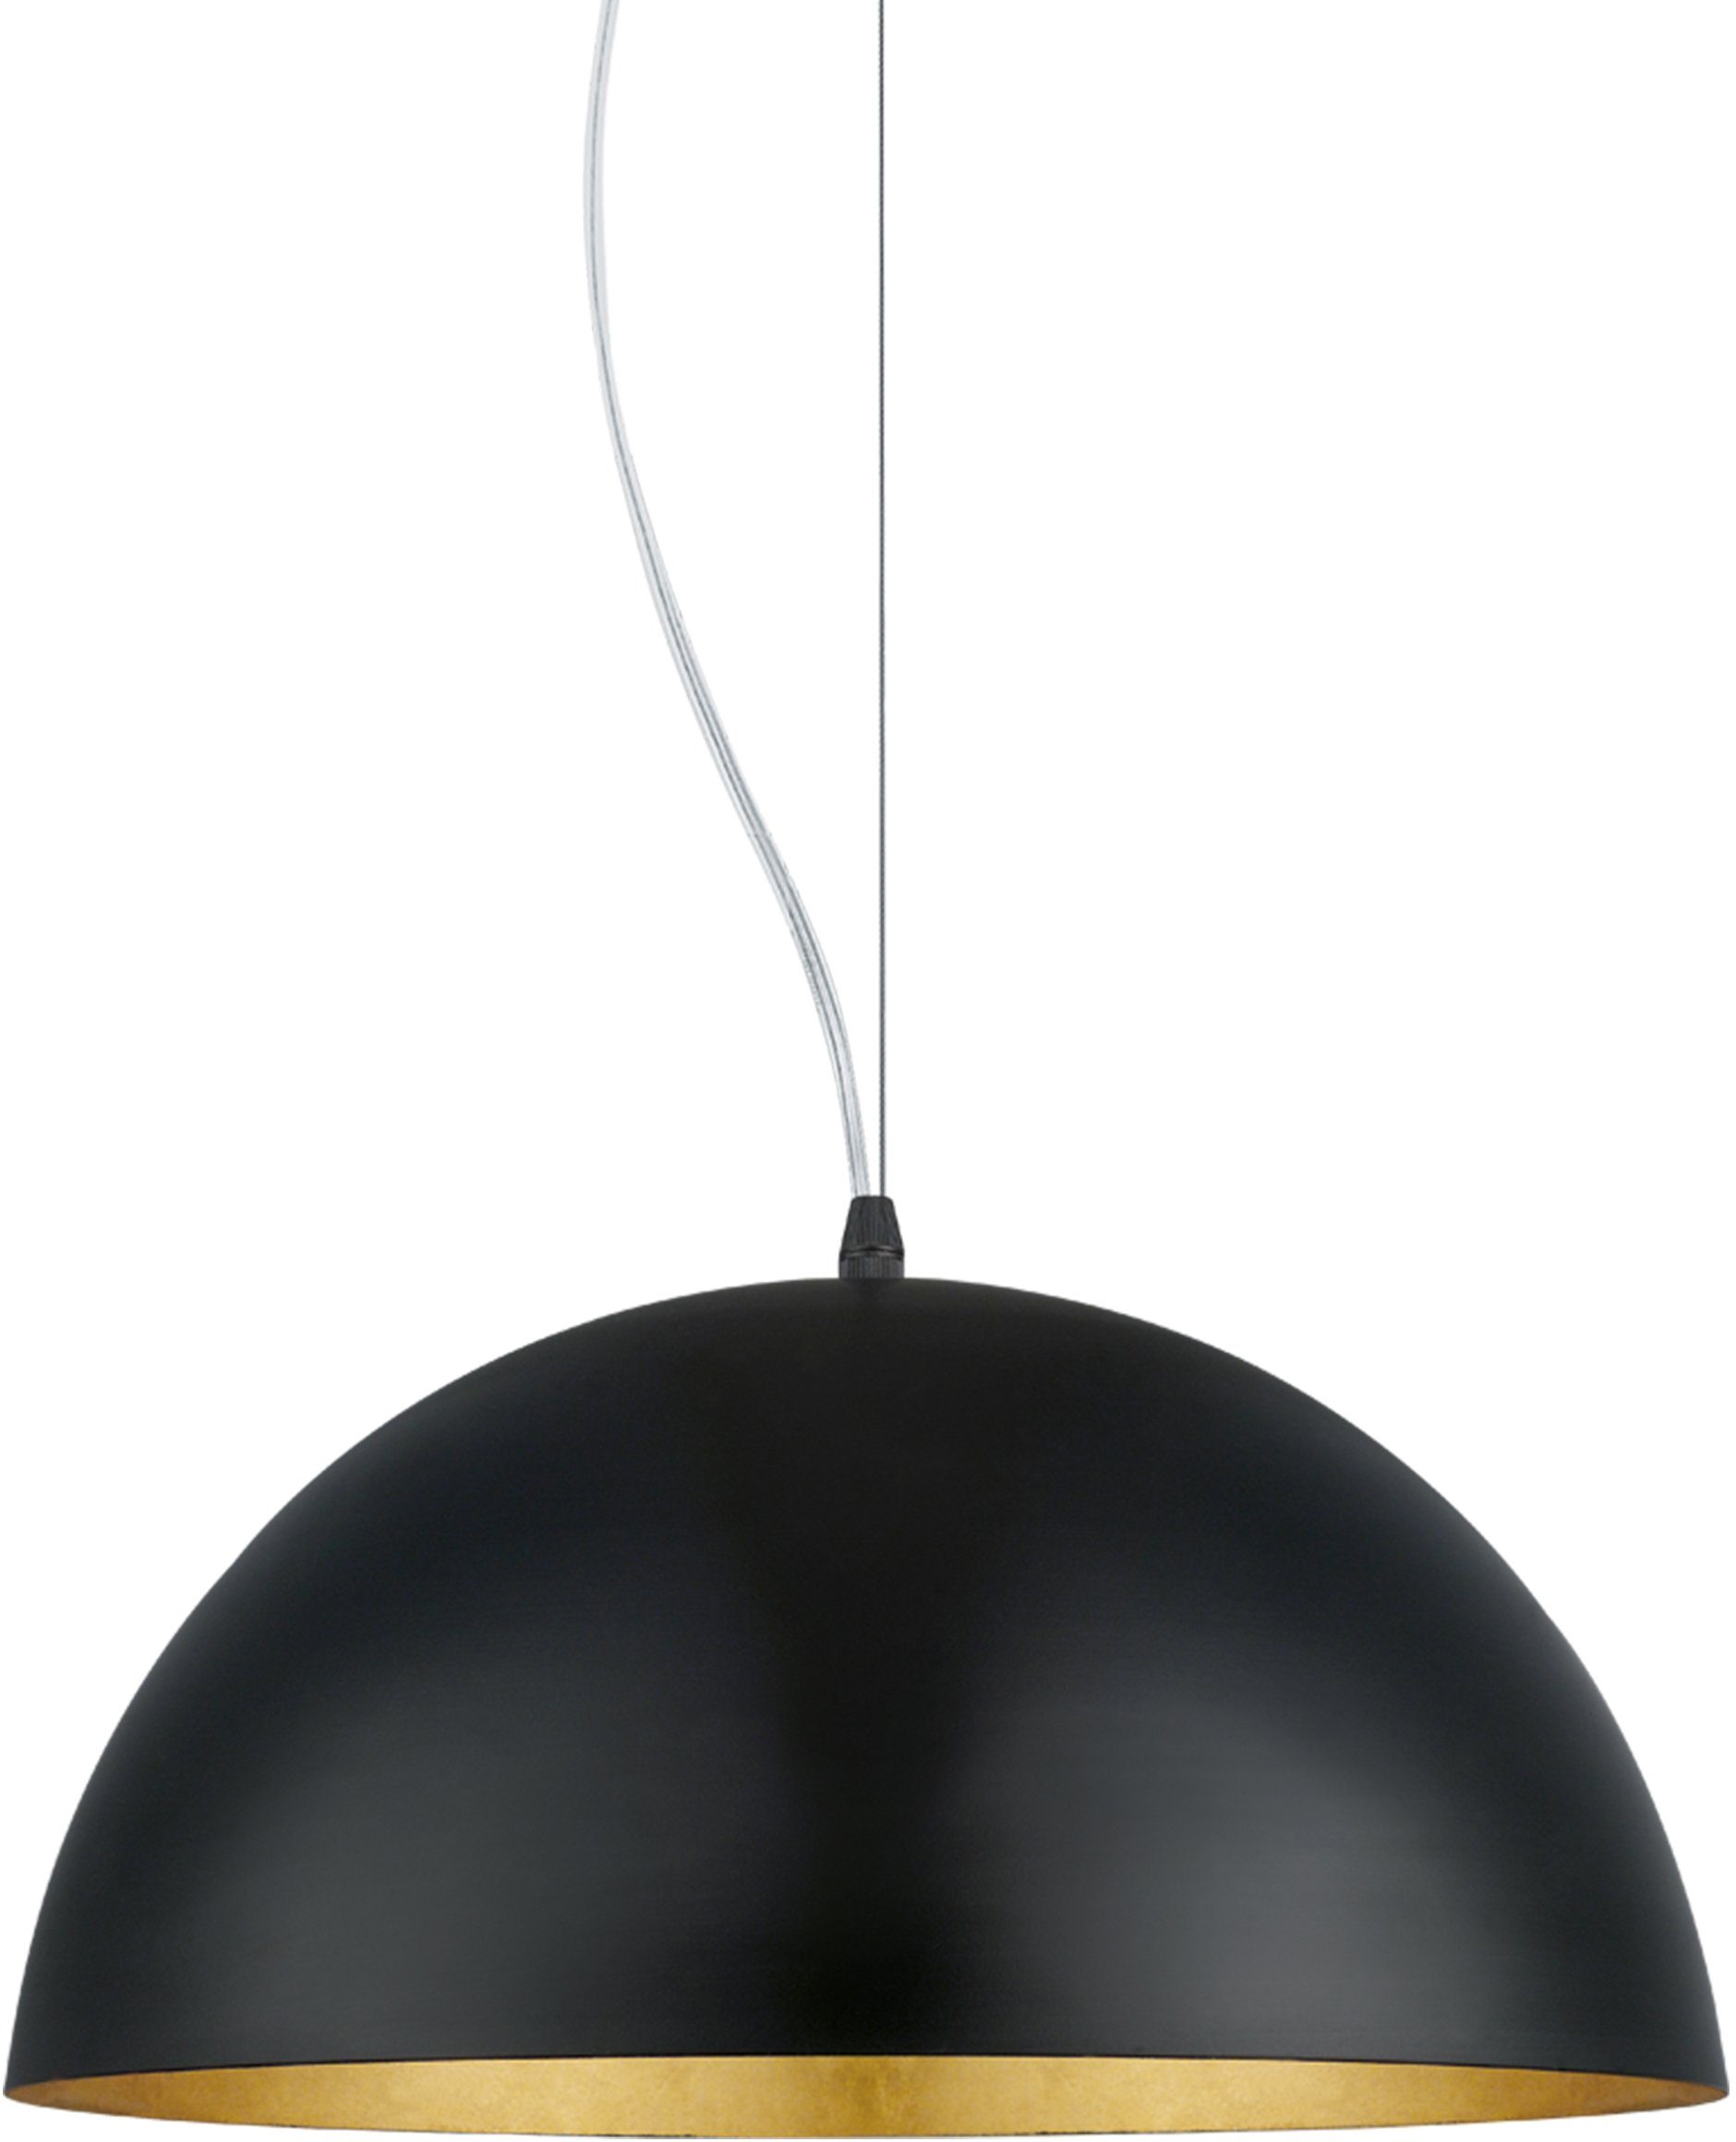 Lastig Verbetering Blauwdruk EGLO Hanglamp GAETANO 1 Hanglamp, hanglamp, dimbaar online bestellen | OTTO